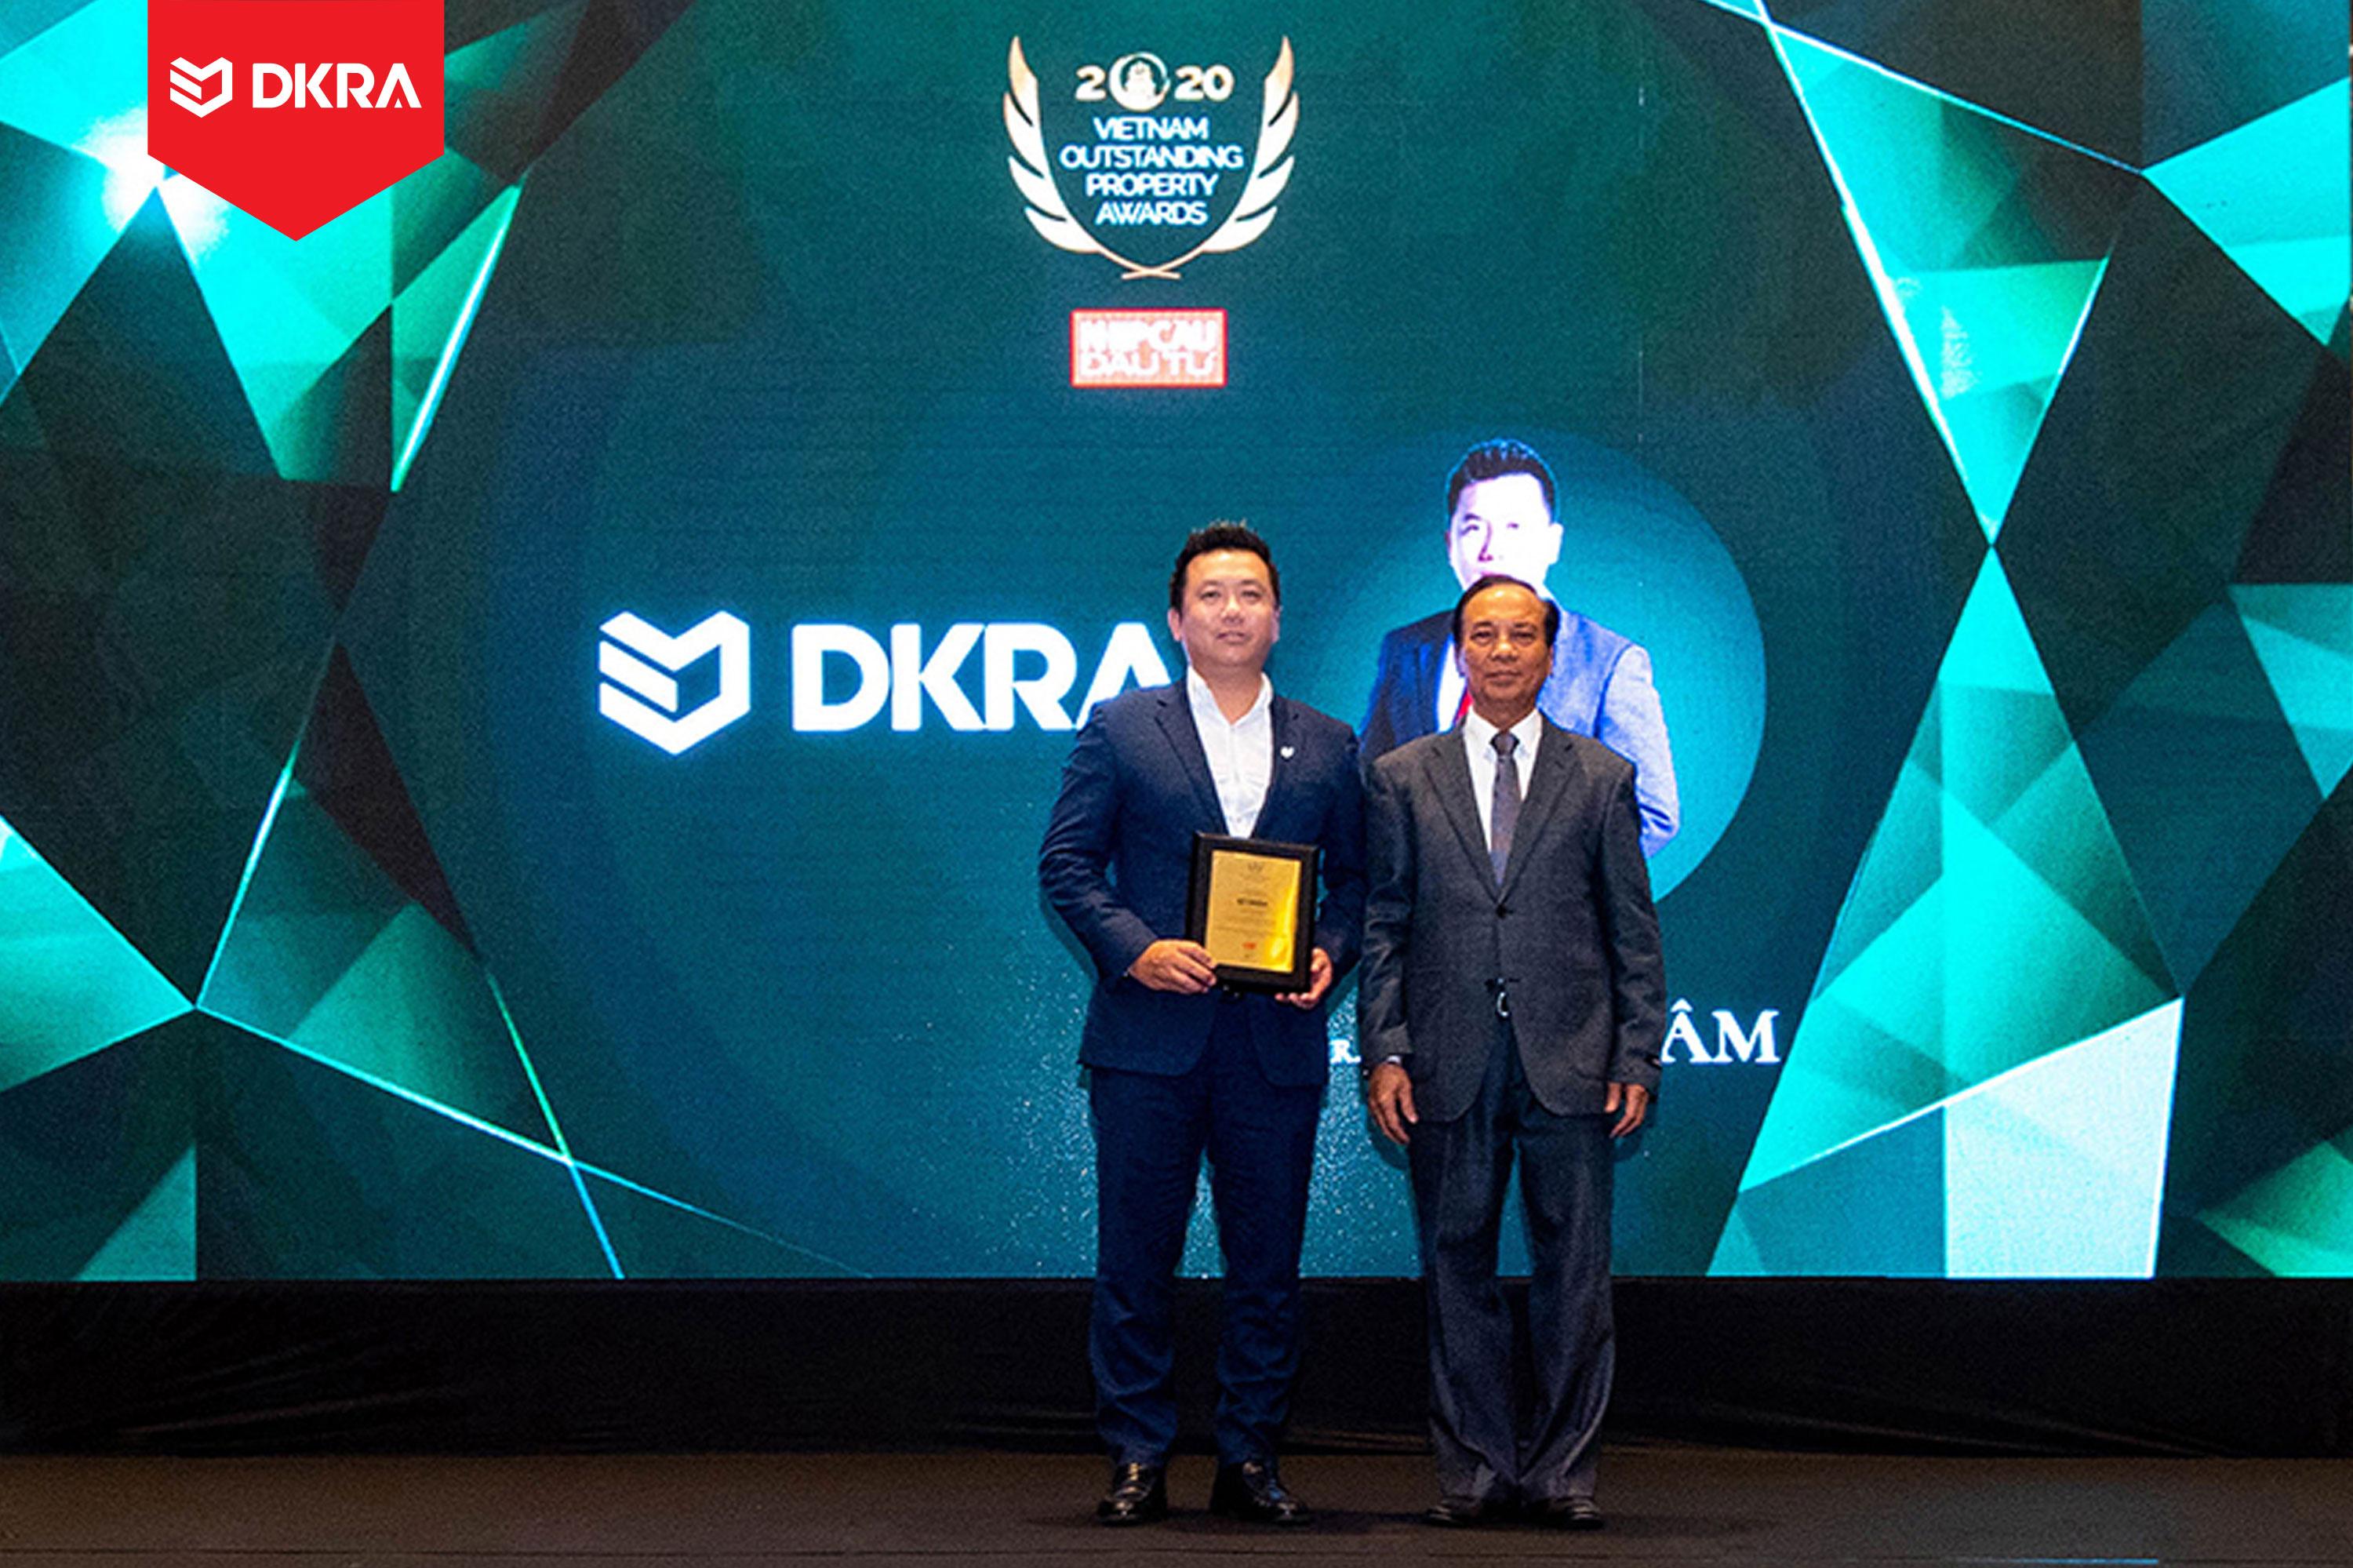 DKRA Vietnam Ông Phạm Lâm - CEO DKRA Vietnam được vinh danh “Doanh nhân Bất động sản ấn tượng” do tạp chí Nhịp cầu đầu tư trao tặng năm 2020